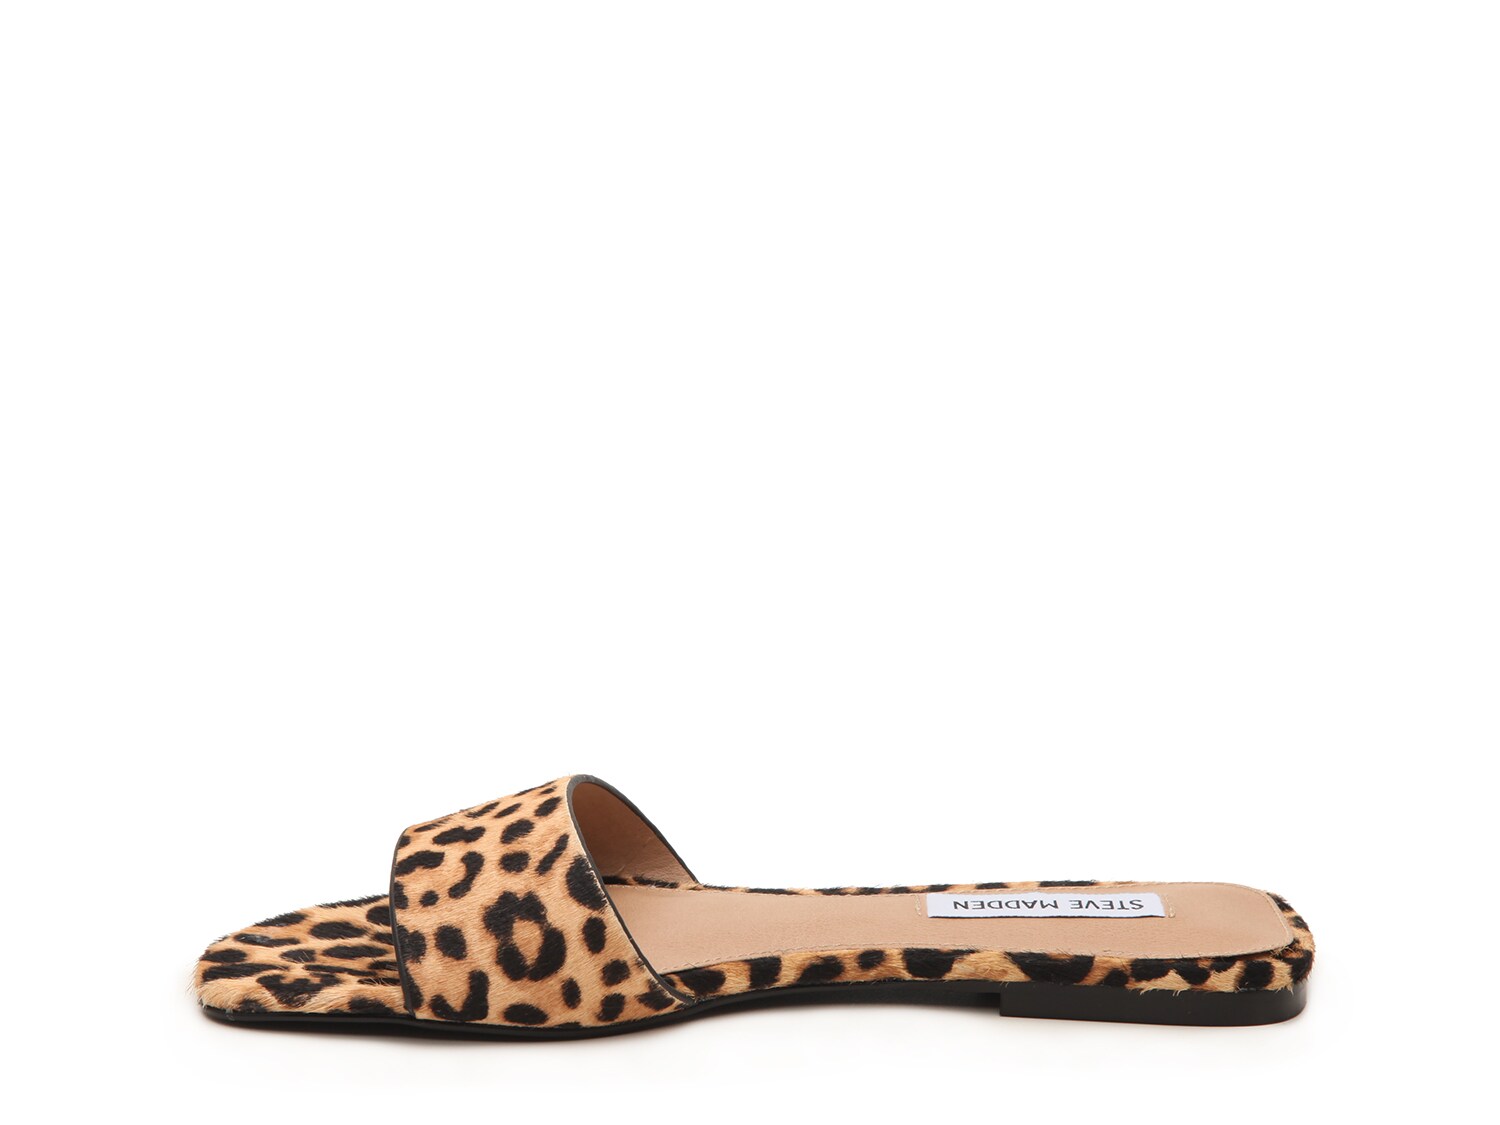 steve madden bev sandal leopard